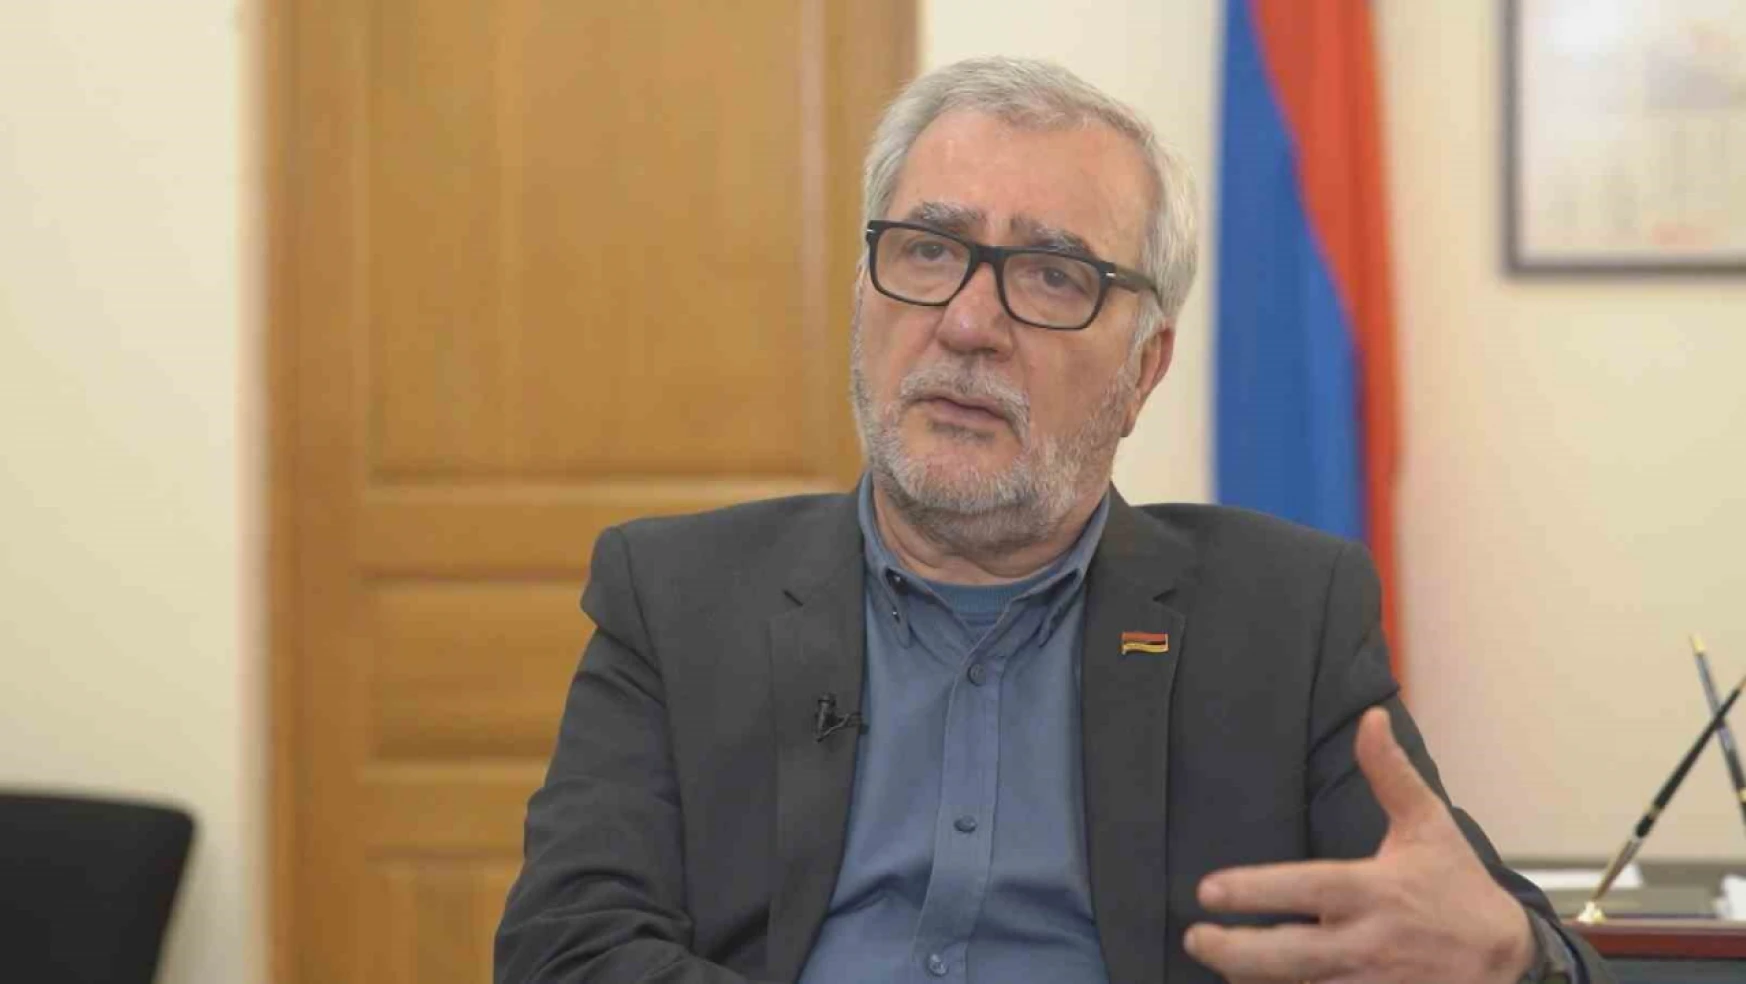 Ermeni yetkililerden KGAÖ yorumu: Ermenistan savunma alanında daha katmanlı bir yapıya geçmeye yönelik stratejik bir karar aldı